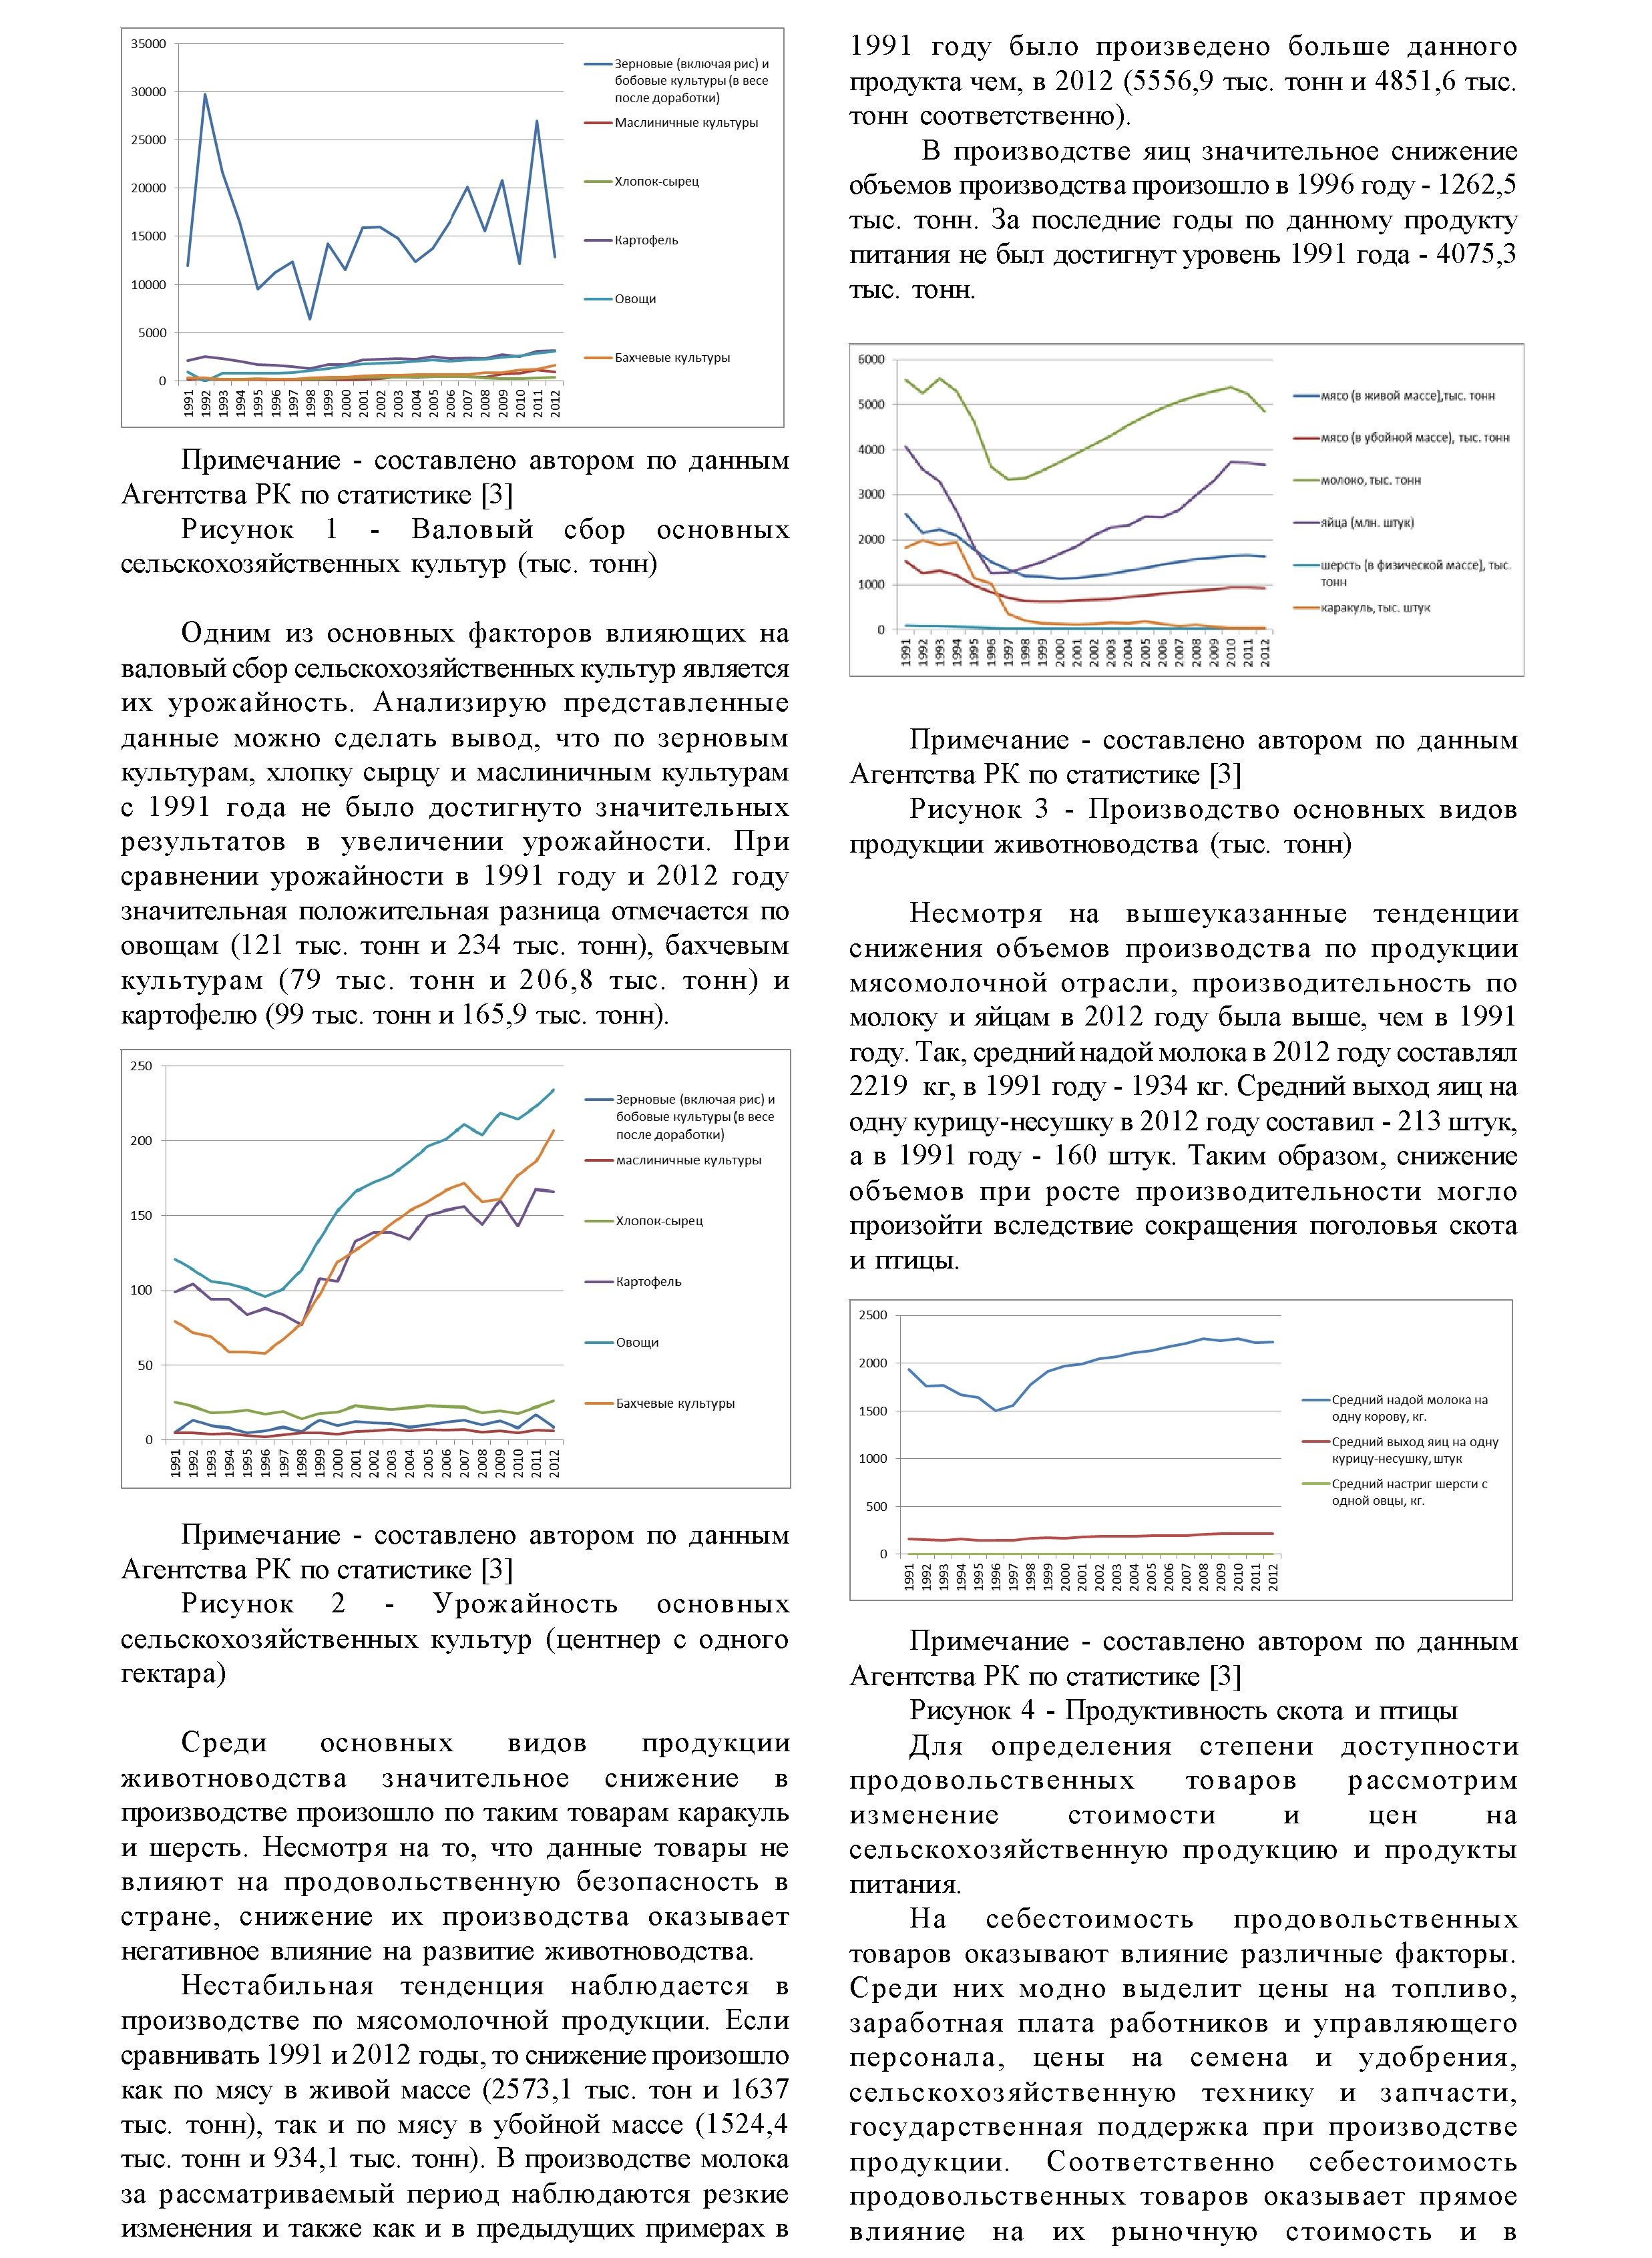 Анализ продовольственной безопасности в Казахстане